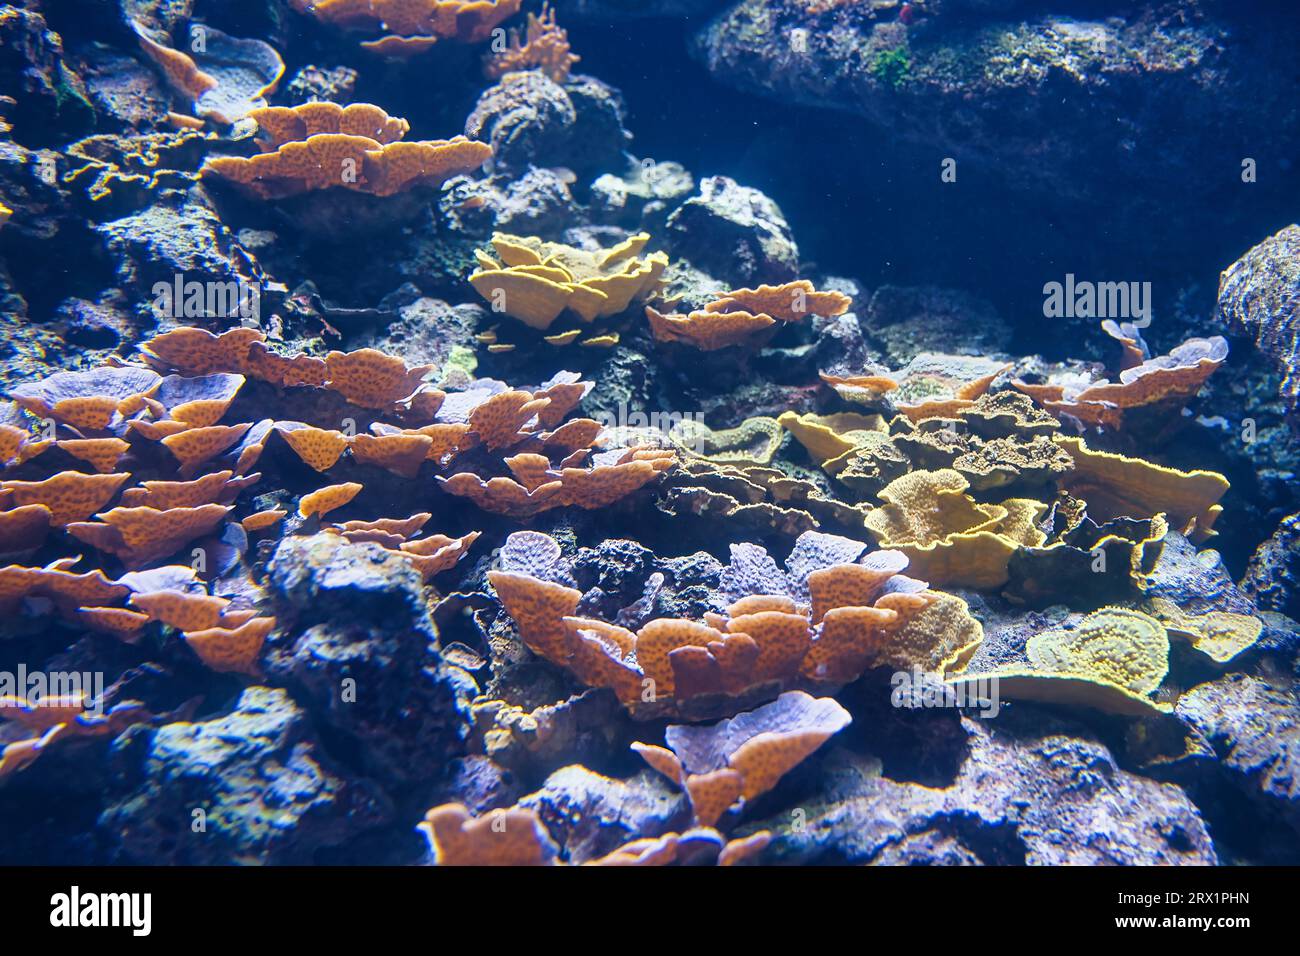 Im Pariser Aquarium entdecken Sie die größten lebenden Baumeister unseres Planeten. Das sind Riffkorallen. Primitive, koloniale Tiere Stockfoto